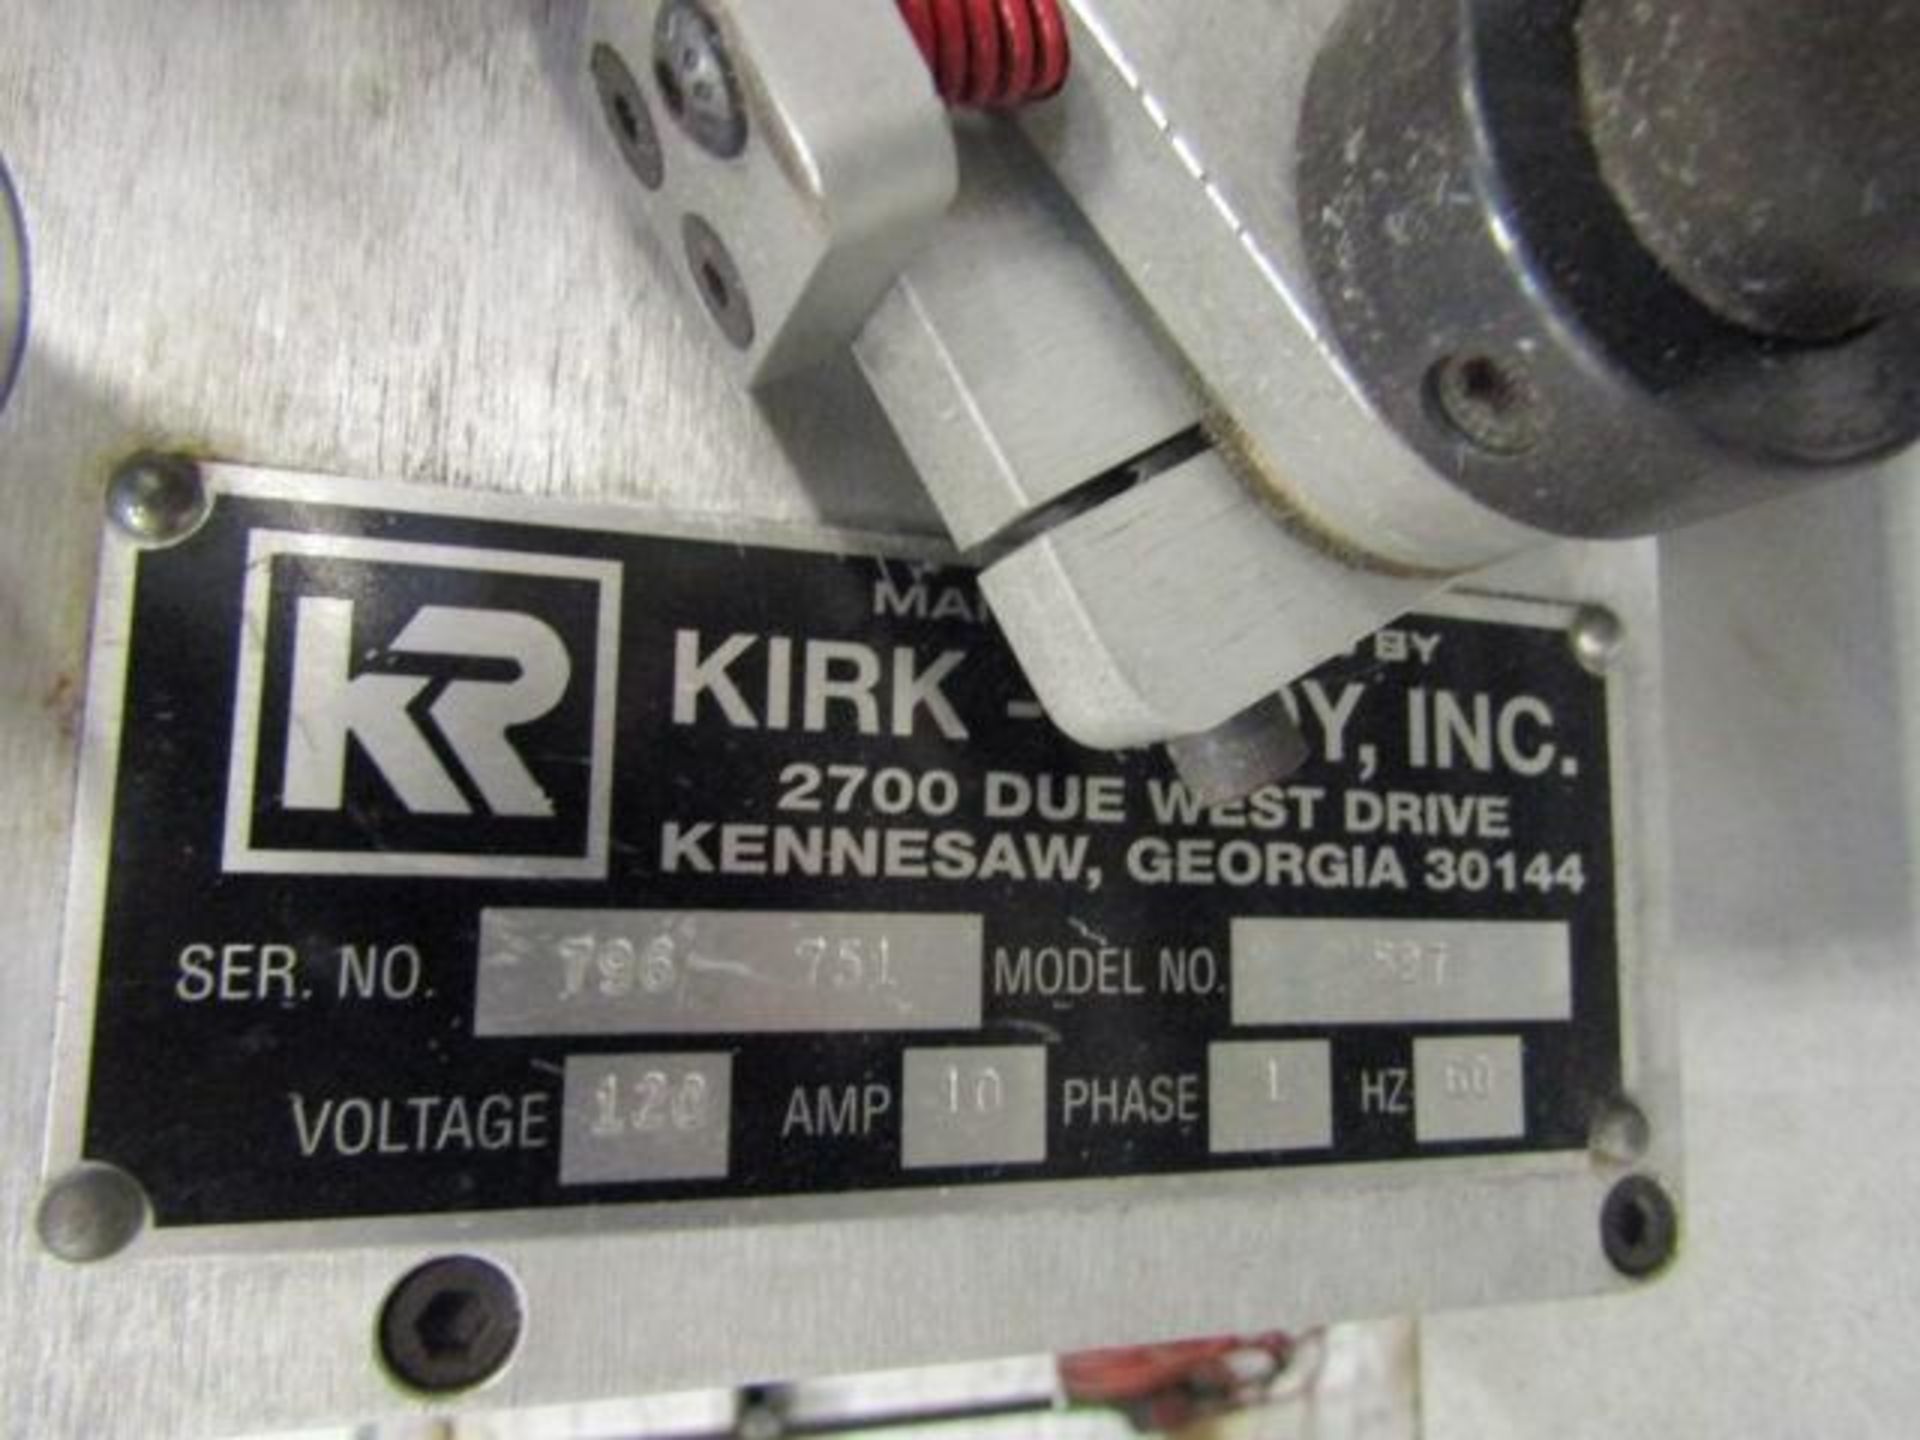 Kirk Rudy Tabber Model 527, S/N 796-751 - Image 2 of 2